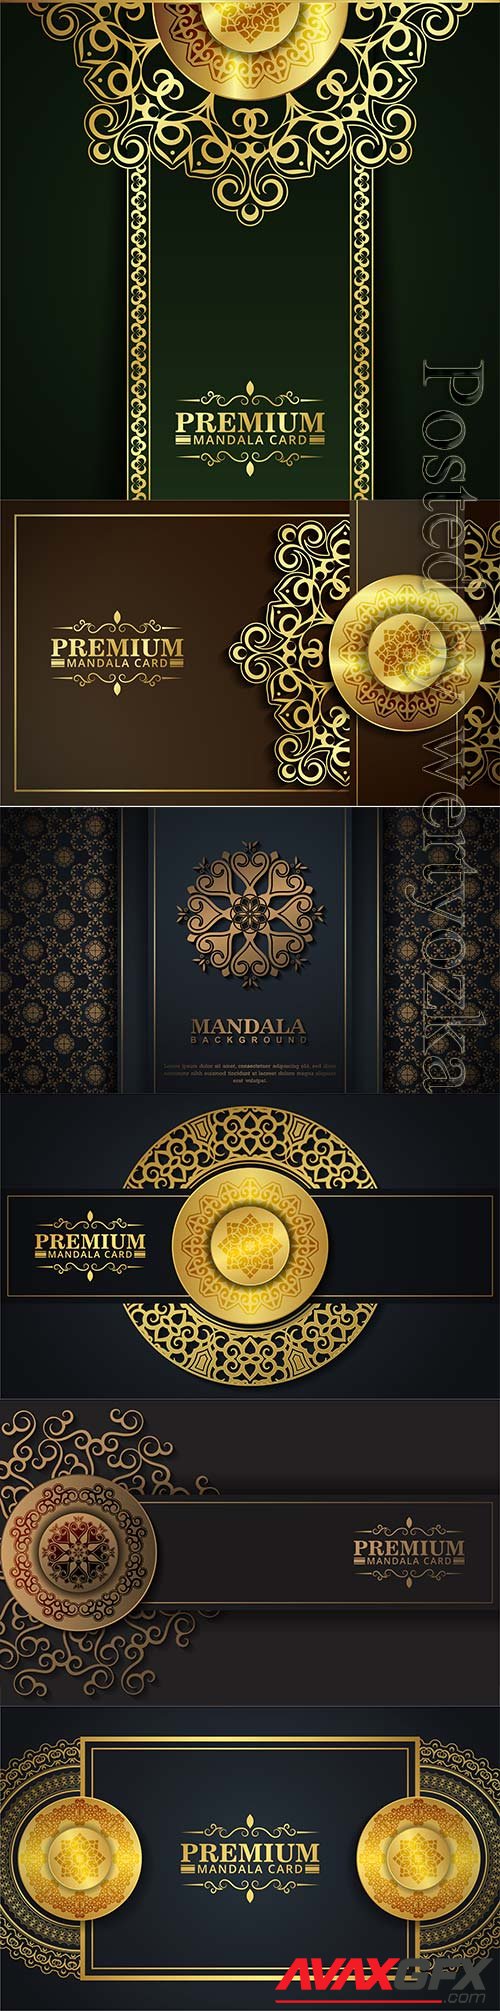 Luxury dark mandala card in vector